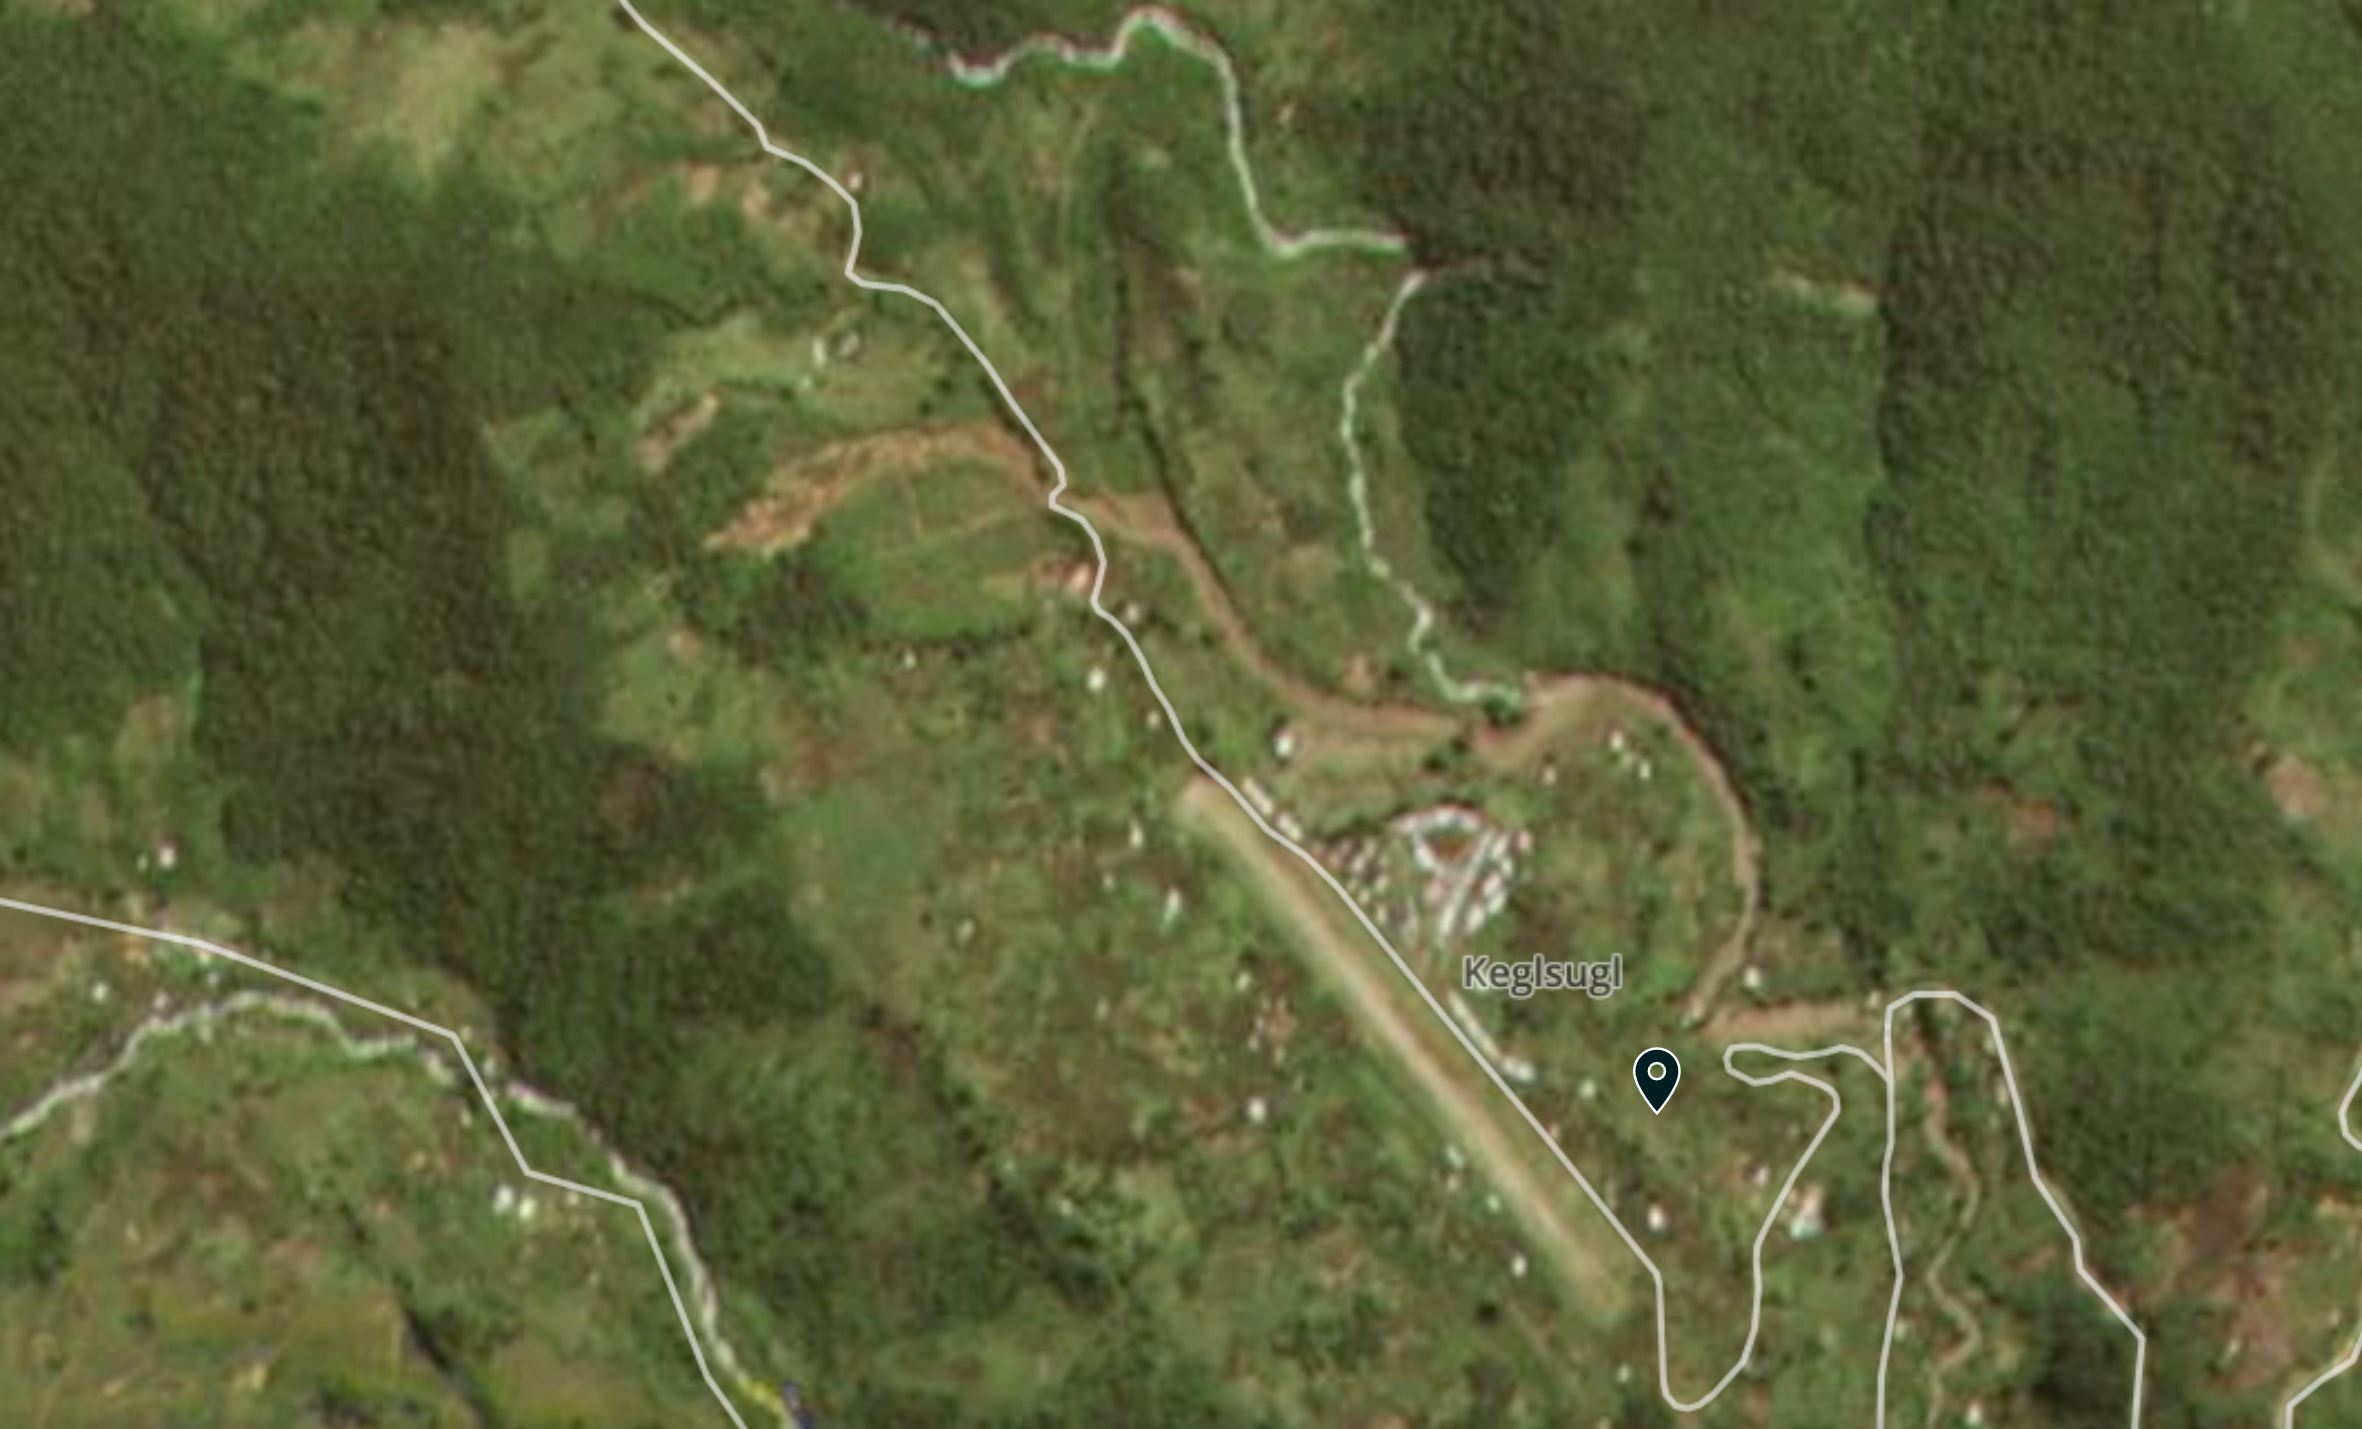 Planet Labs image of the Kegesuglo landslide